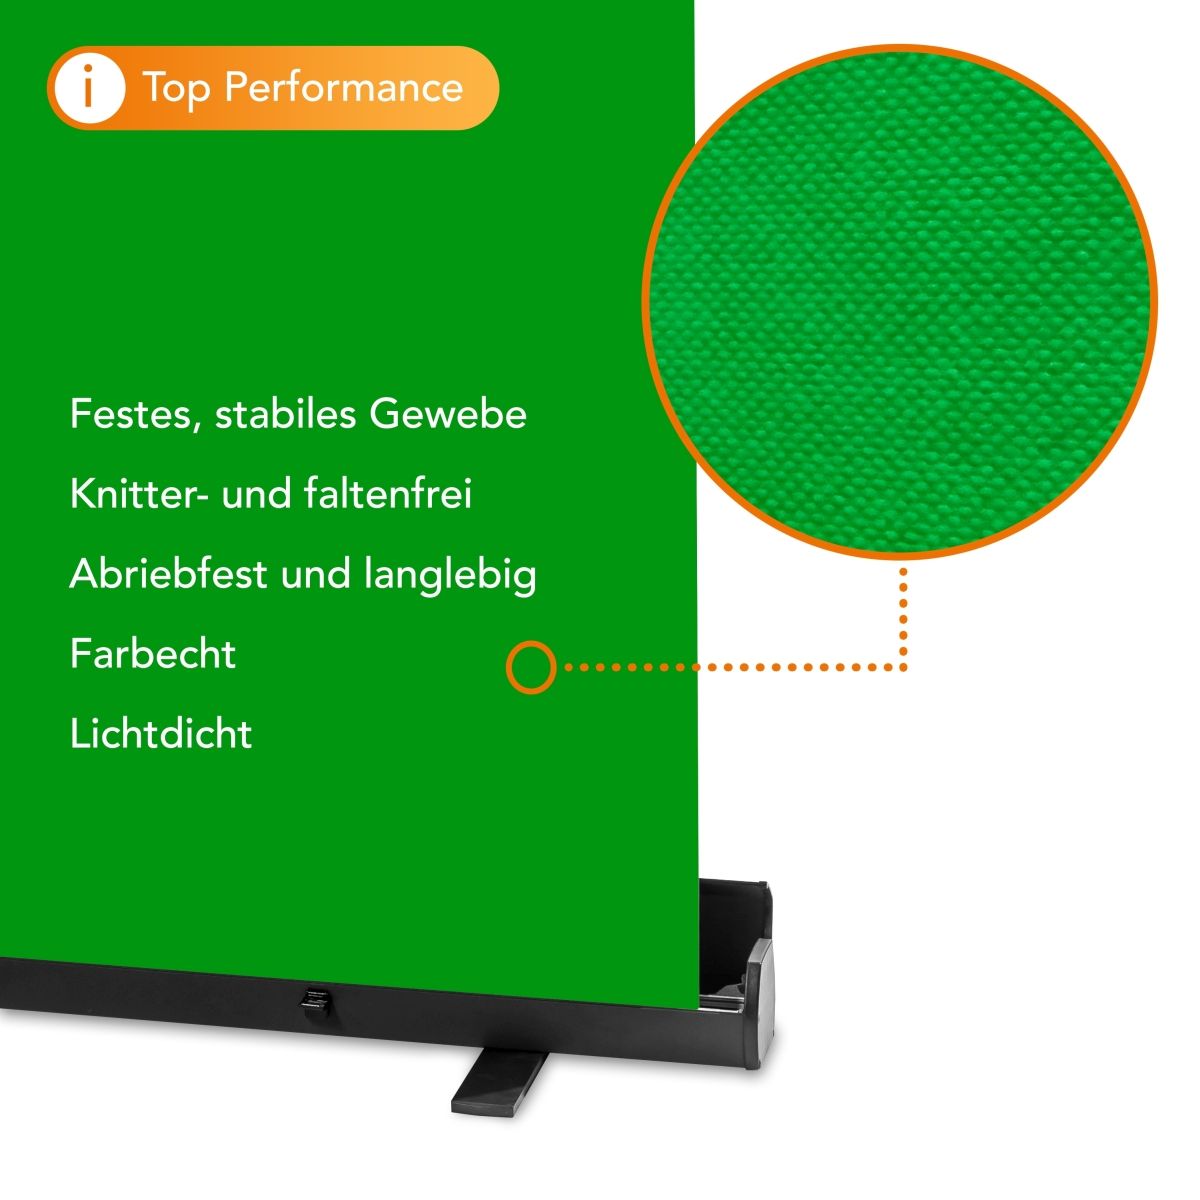 Walimex pro Roll-up Panel Hintergrund grün 165x220